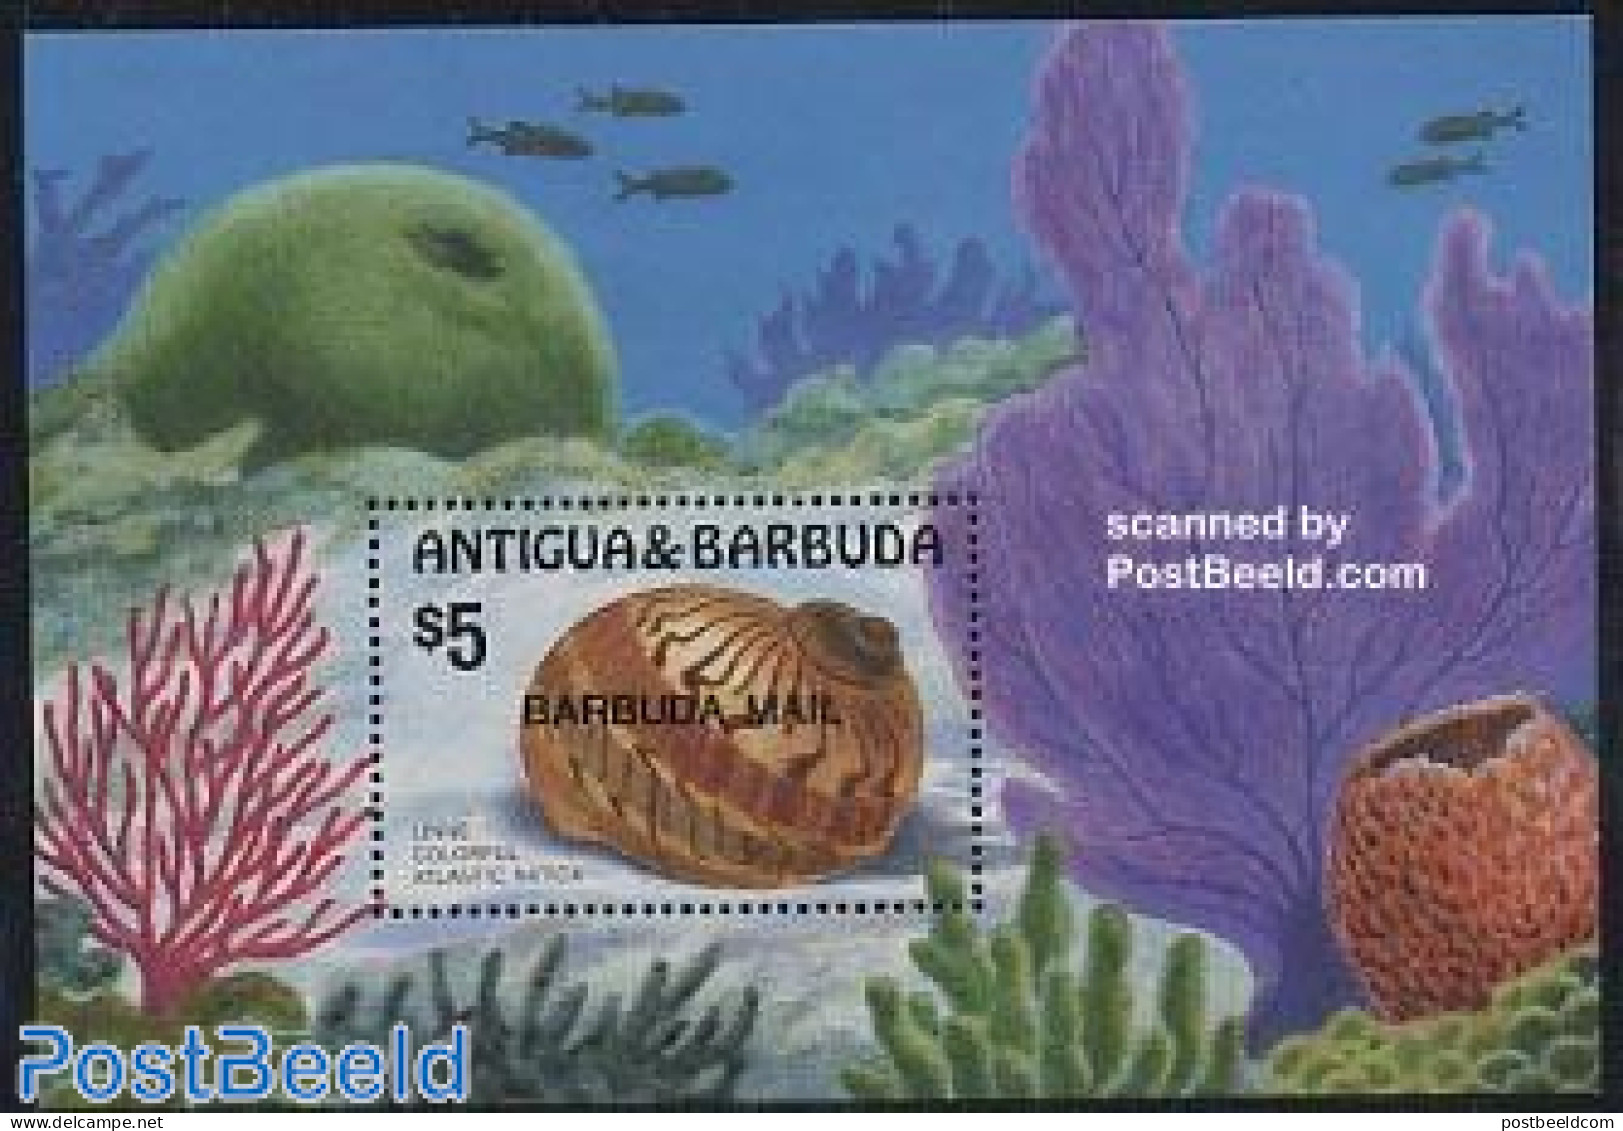 Barbuda 1986 Shells S/s, Mint NH, Nature - Shells & Crustaceans - Marine Life